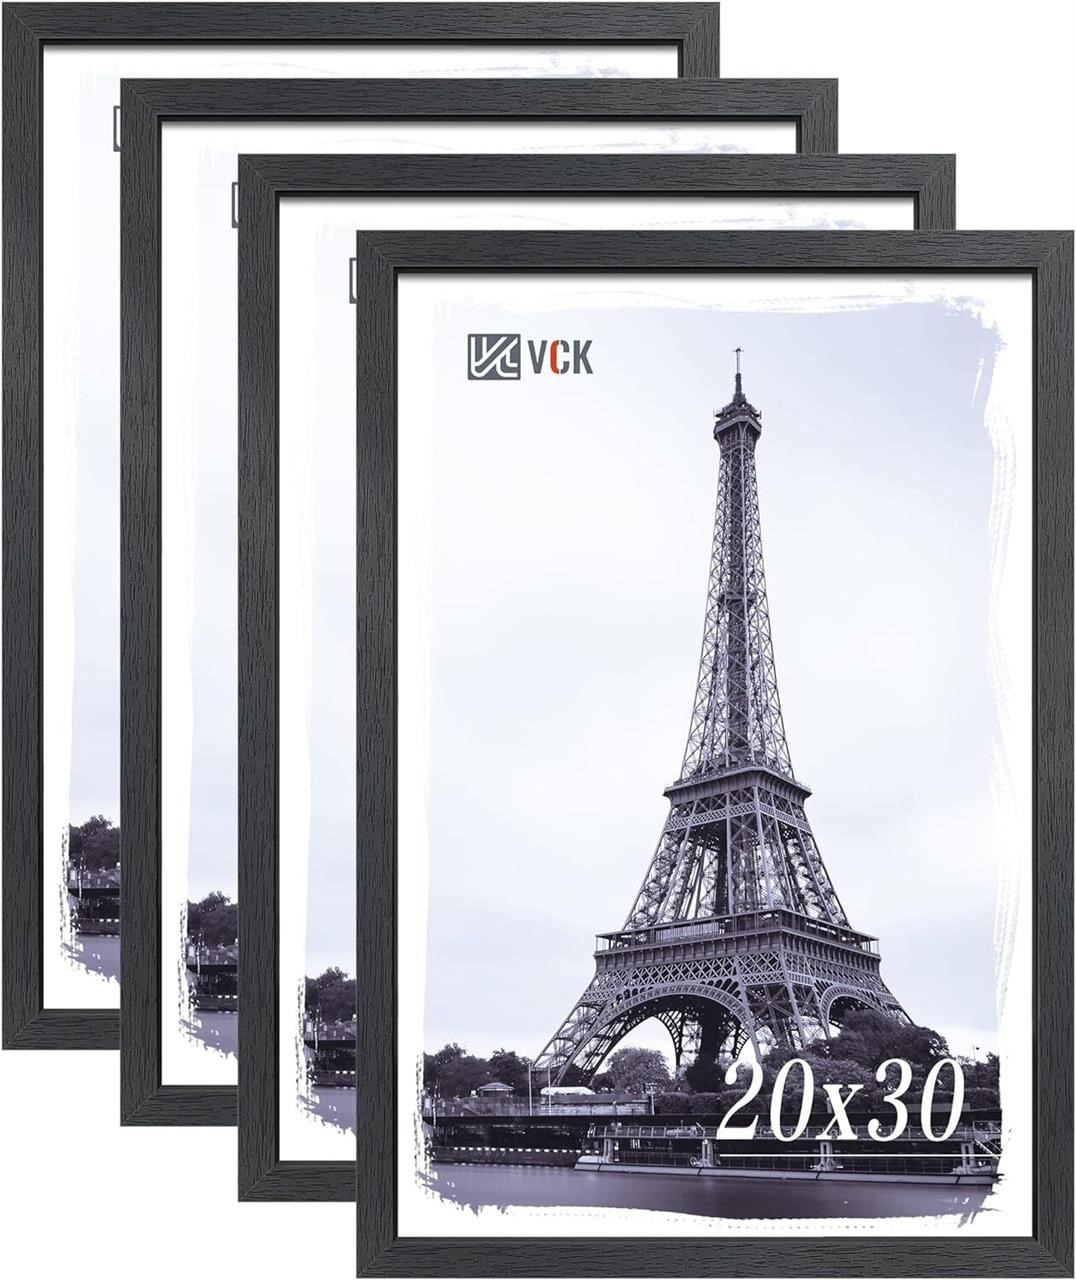 VCK Poster Frame Set of 4  20x30 Black Wood